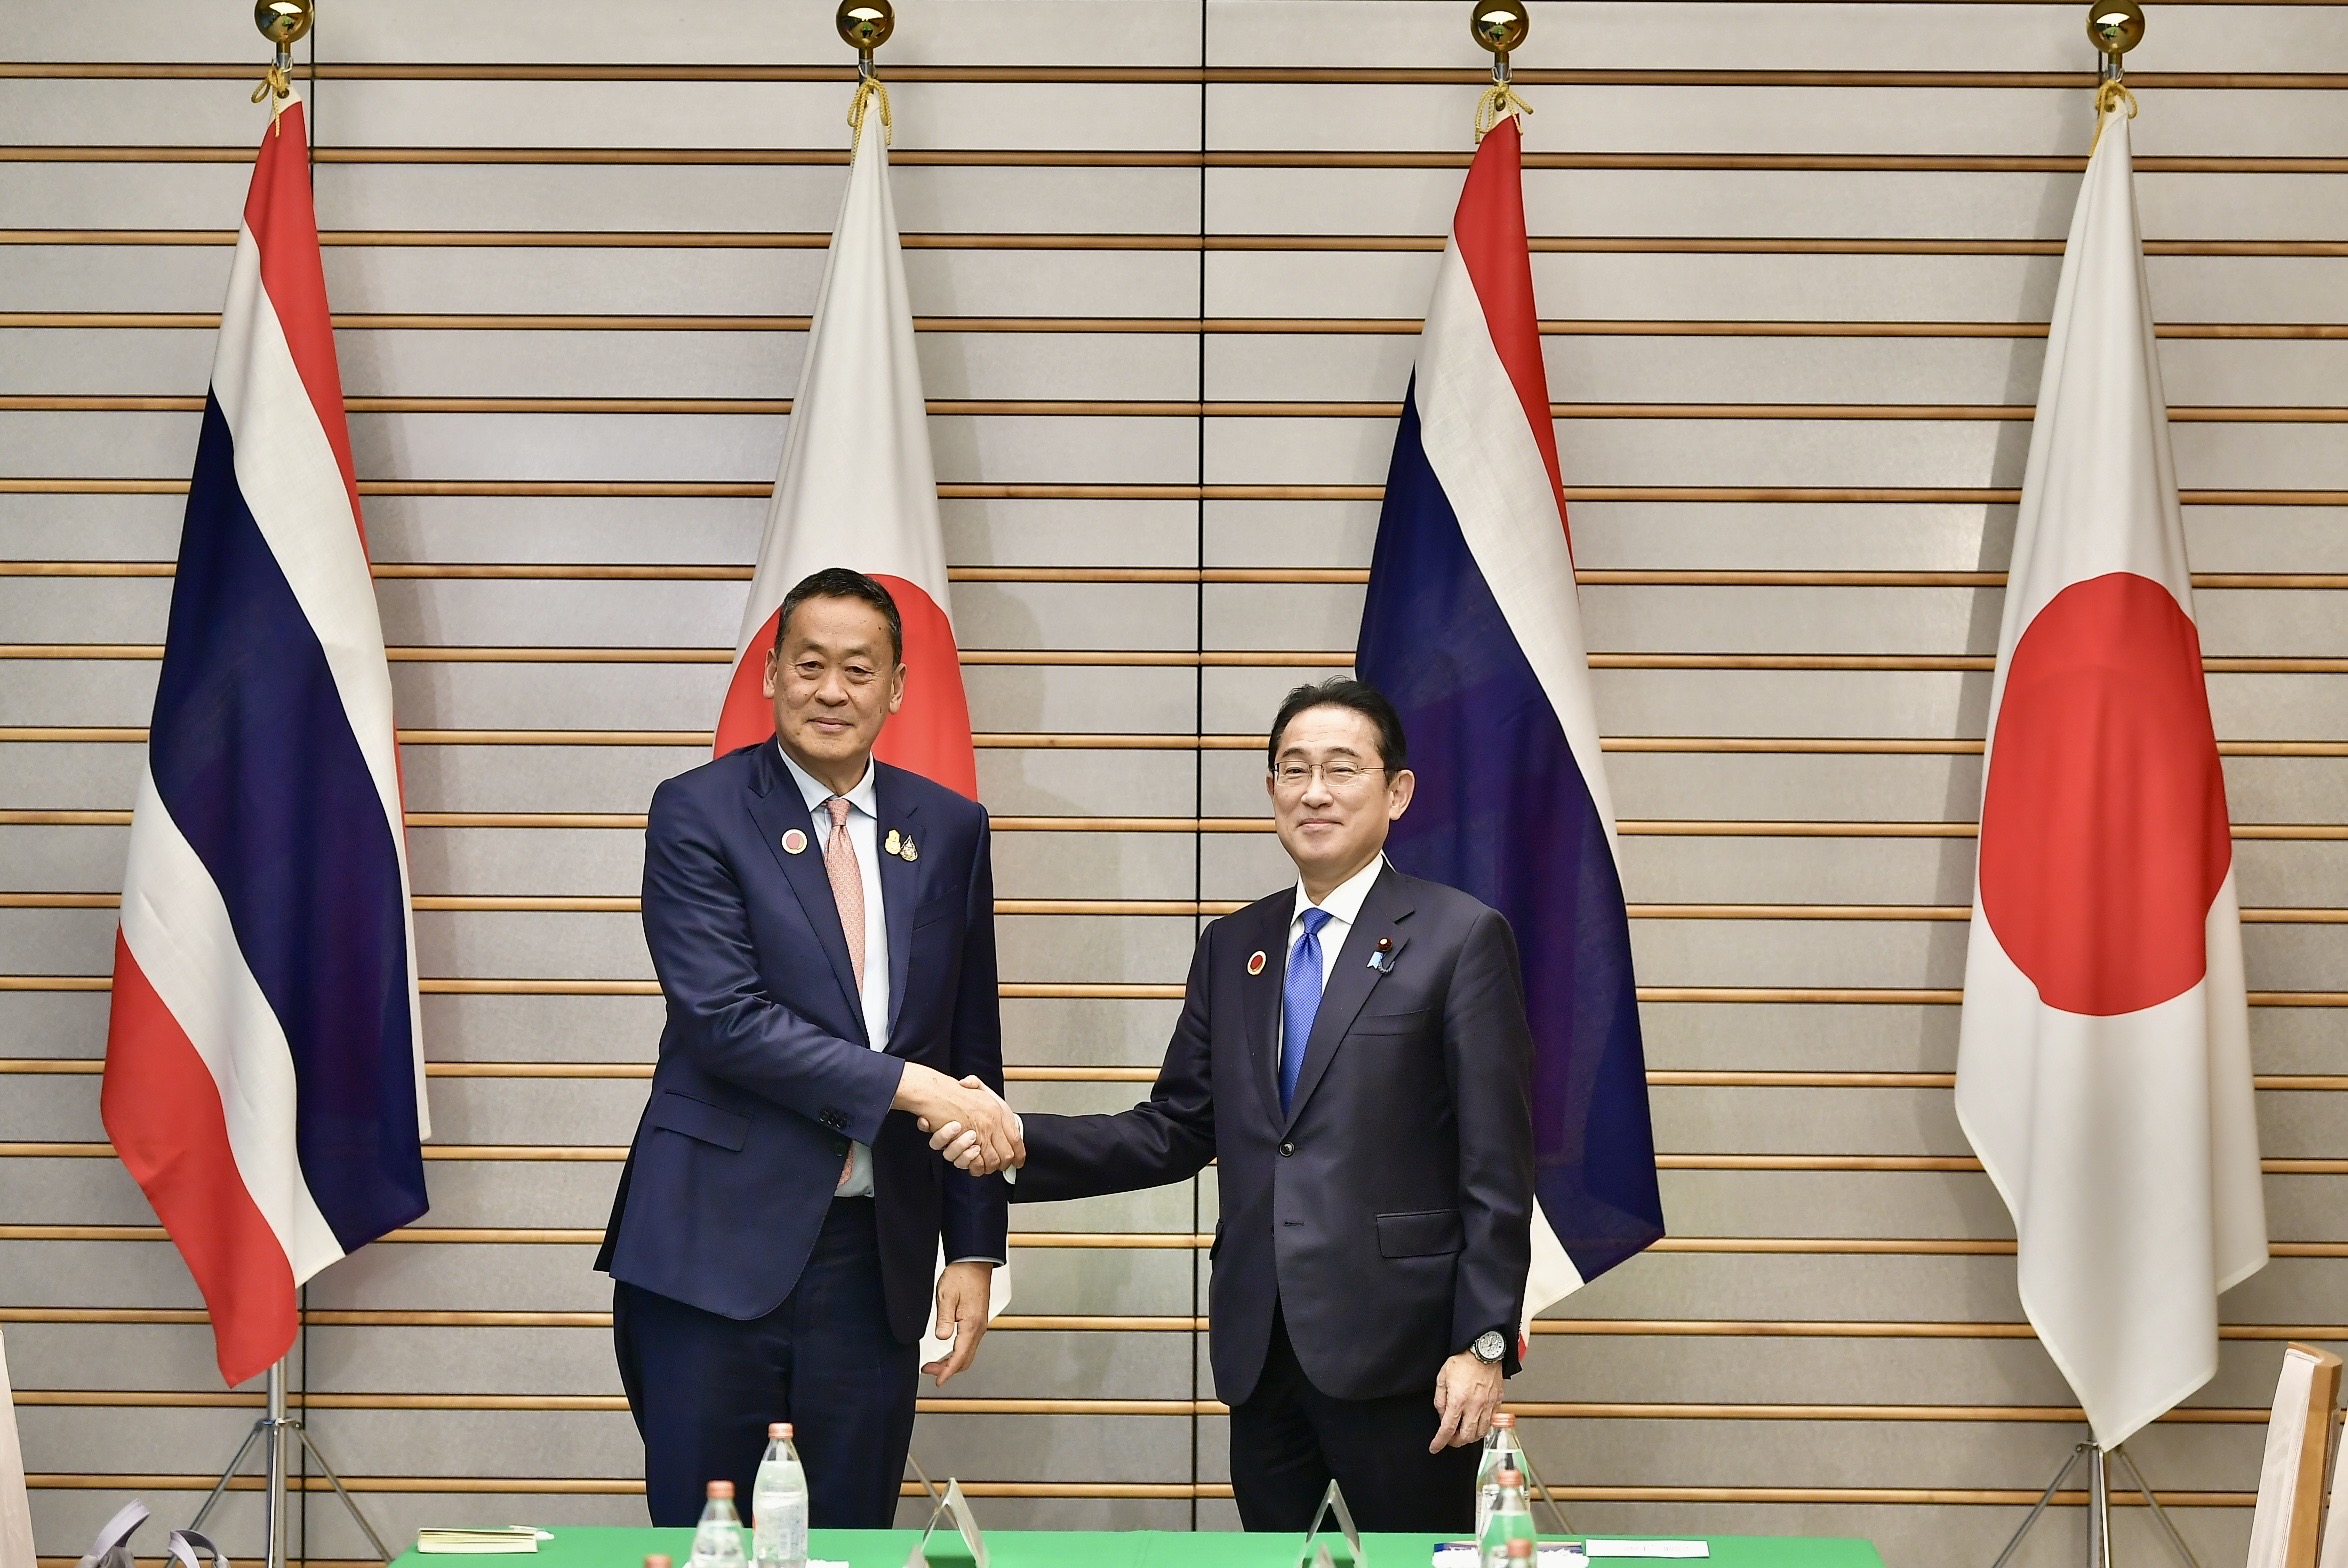 「セスタ」は日本の首相に、タイがOECDグループへの参加申請に興味があると伝えた: InfoQuest